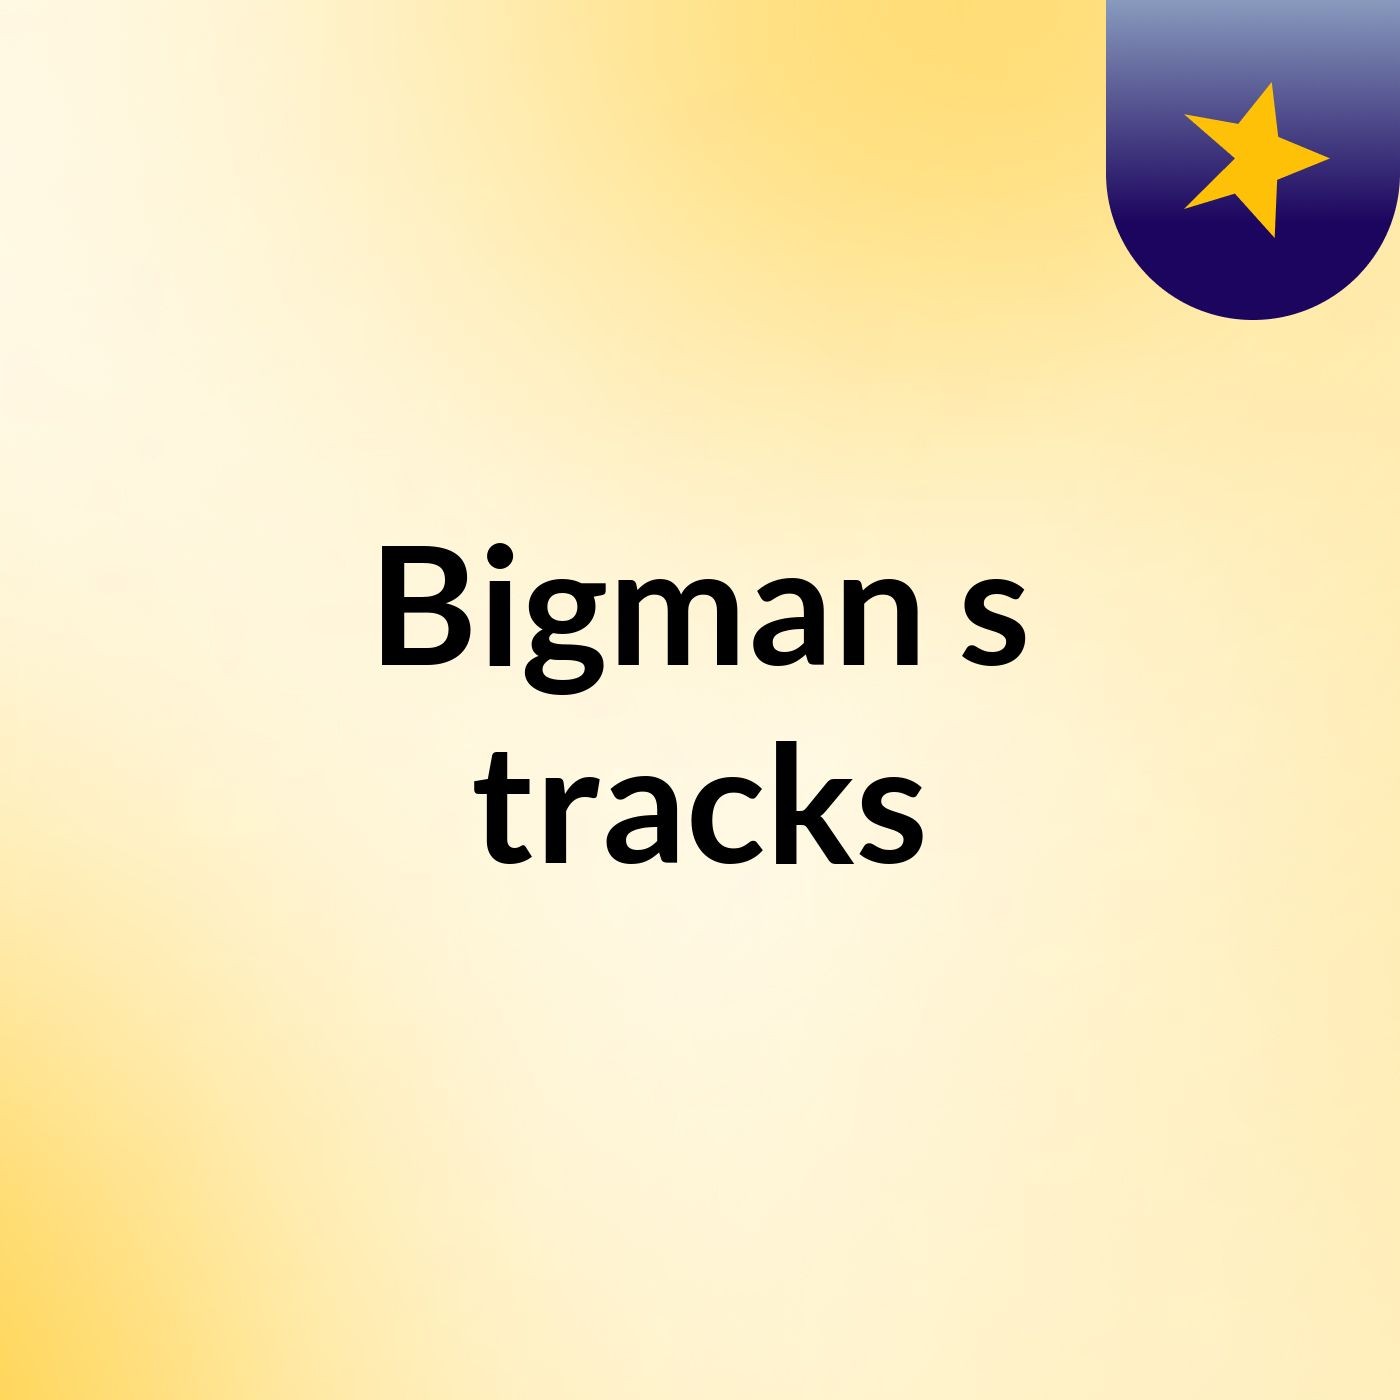 Bigman's tracks